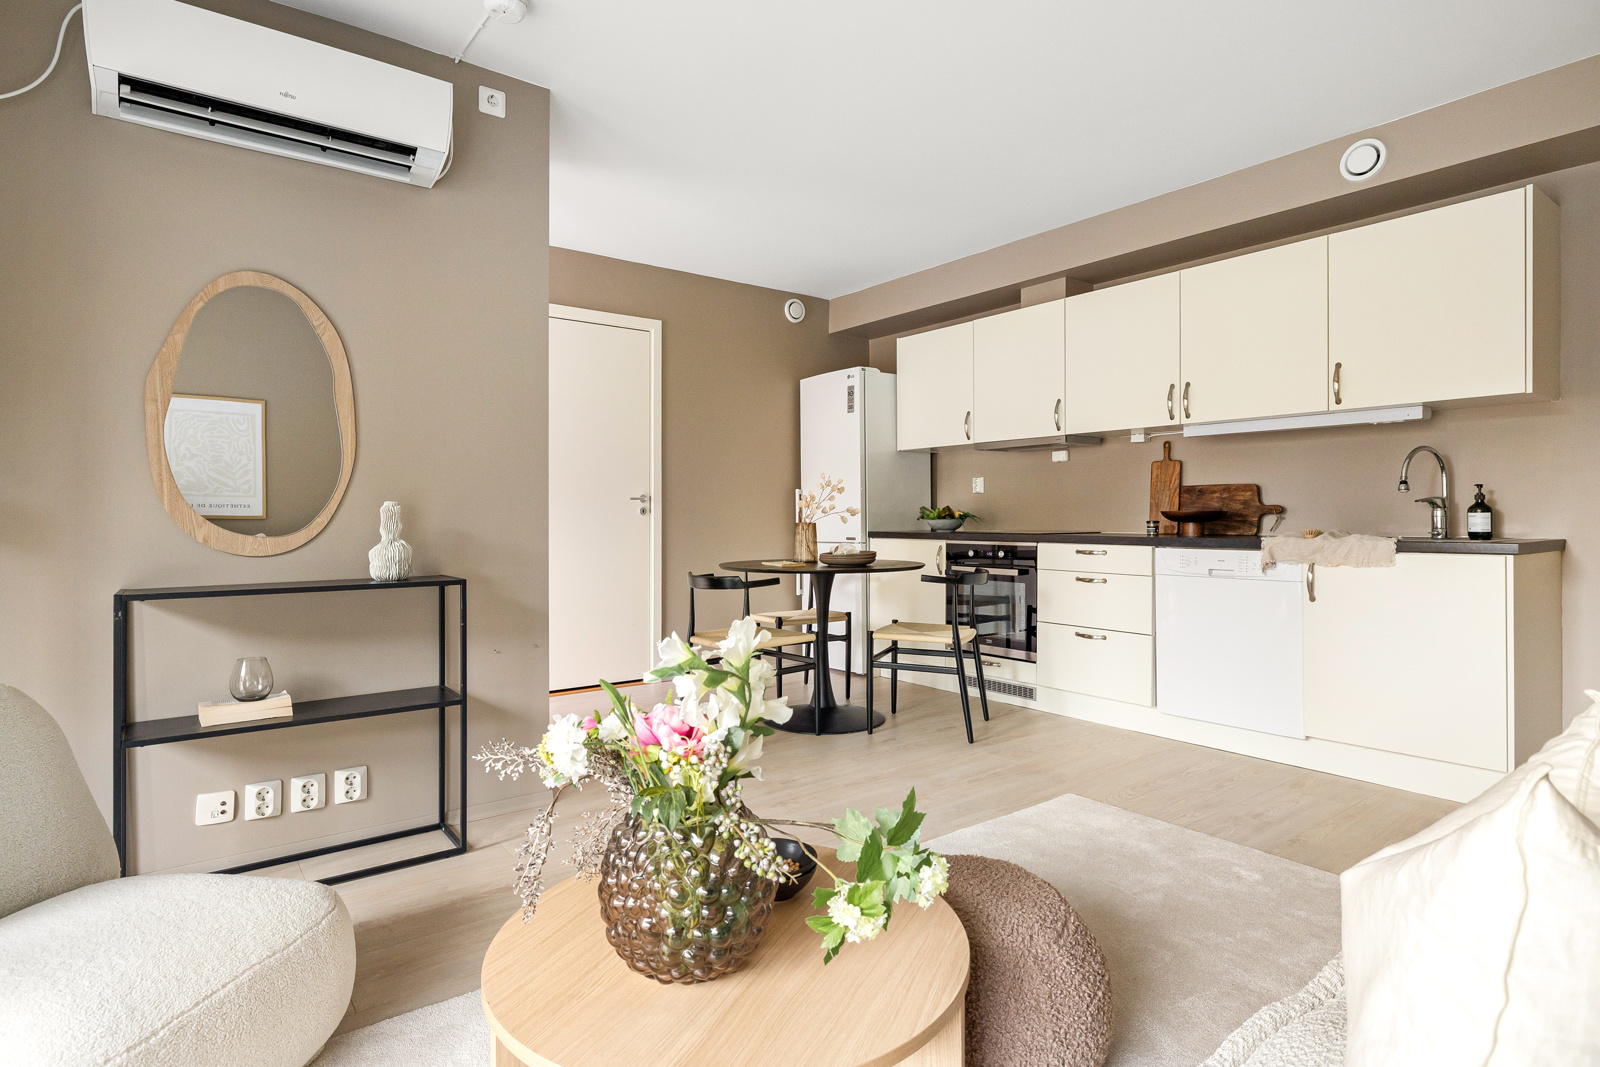 Velkommen til Storestraumen 91G - perfekt leilighet fra 2016 for førstegangskjøpere